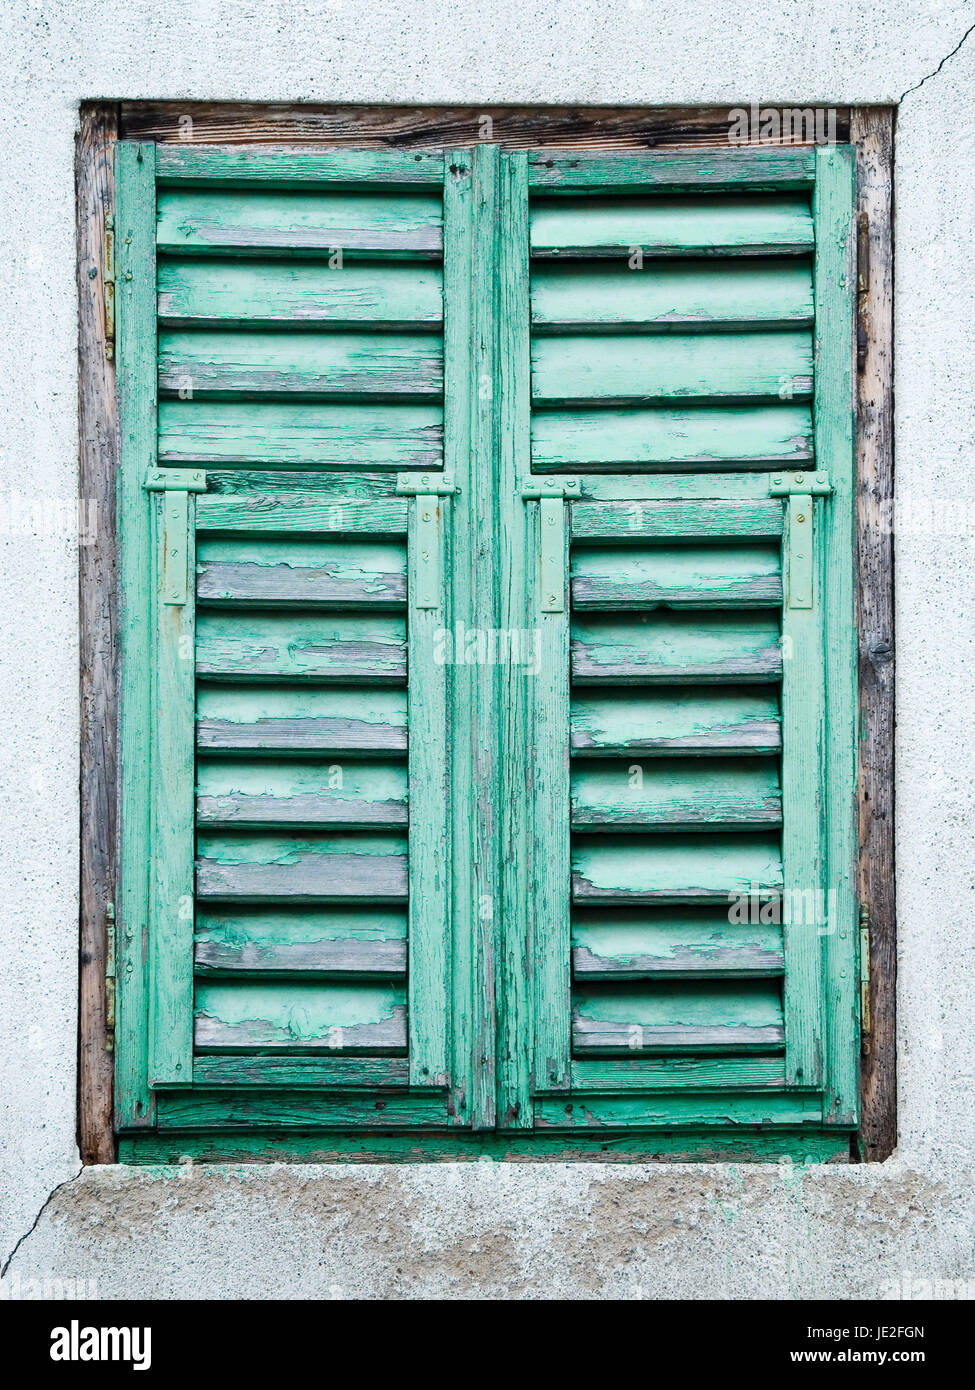 frontale Ansicht eines alten verwitterten Fensterladen mit grüner abblätternder Farbe in grauer Fassade Stock Photo